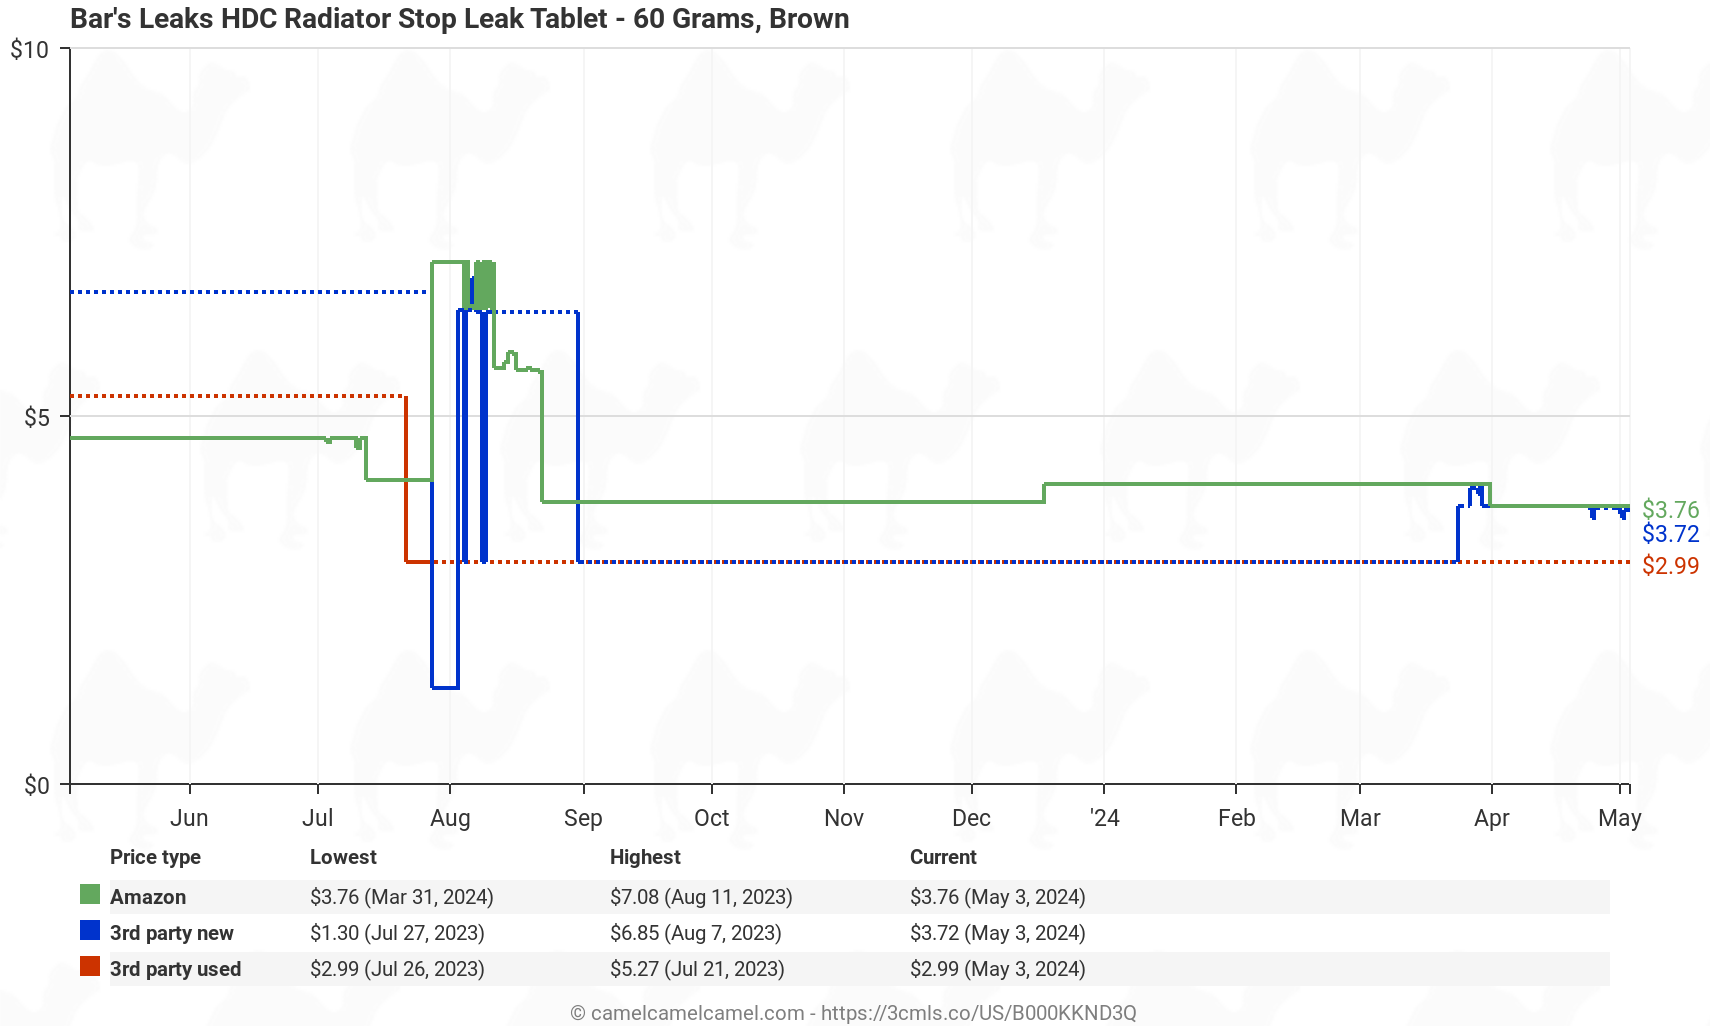 Bar's Leaks HDC Radiator Stop Leak Tablet - 60 Grams - Price History: B000KKND3Q